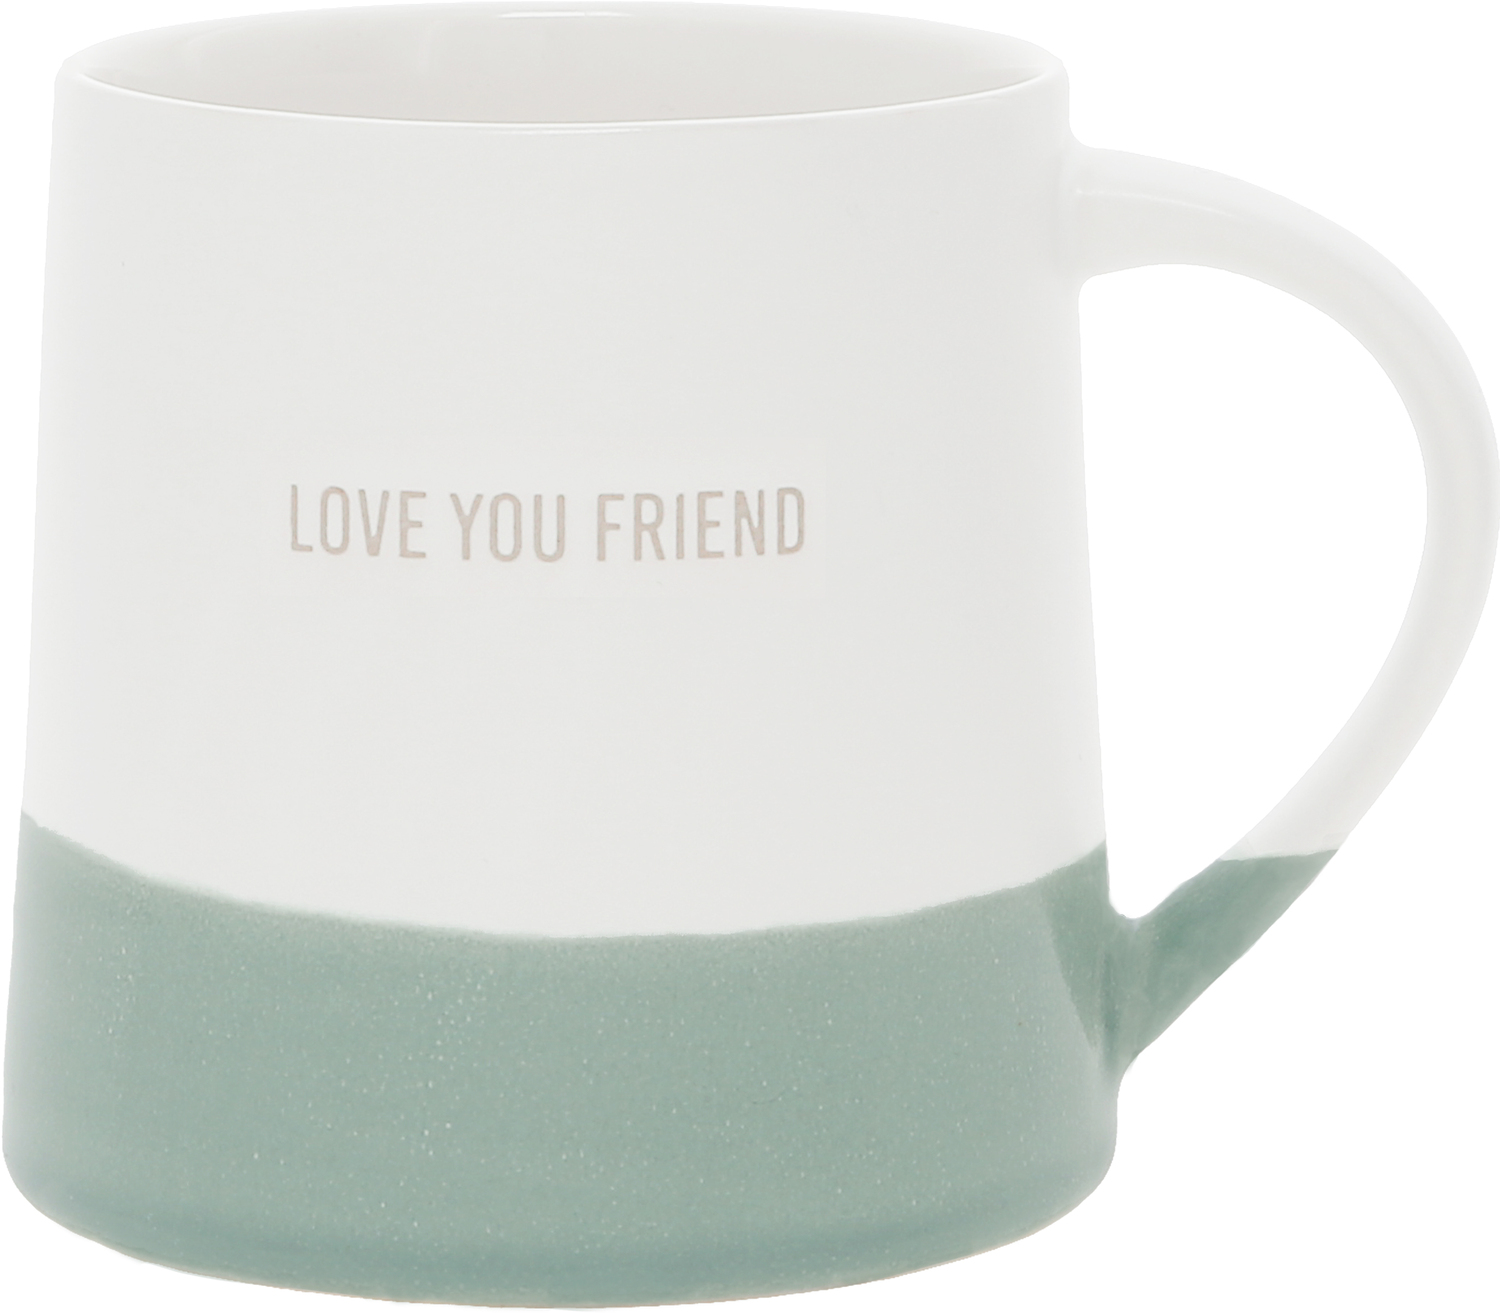 Love You Friend by Love You - Love You Friend - 17 oz Mug